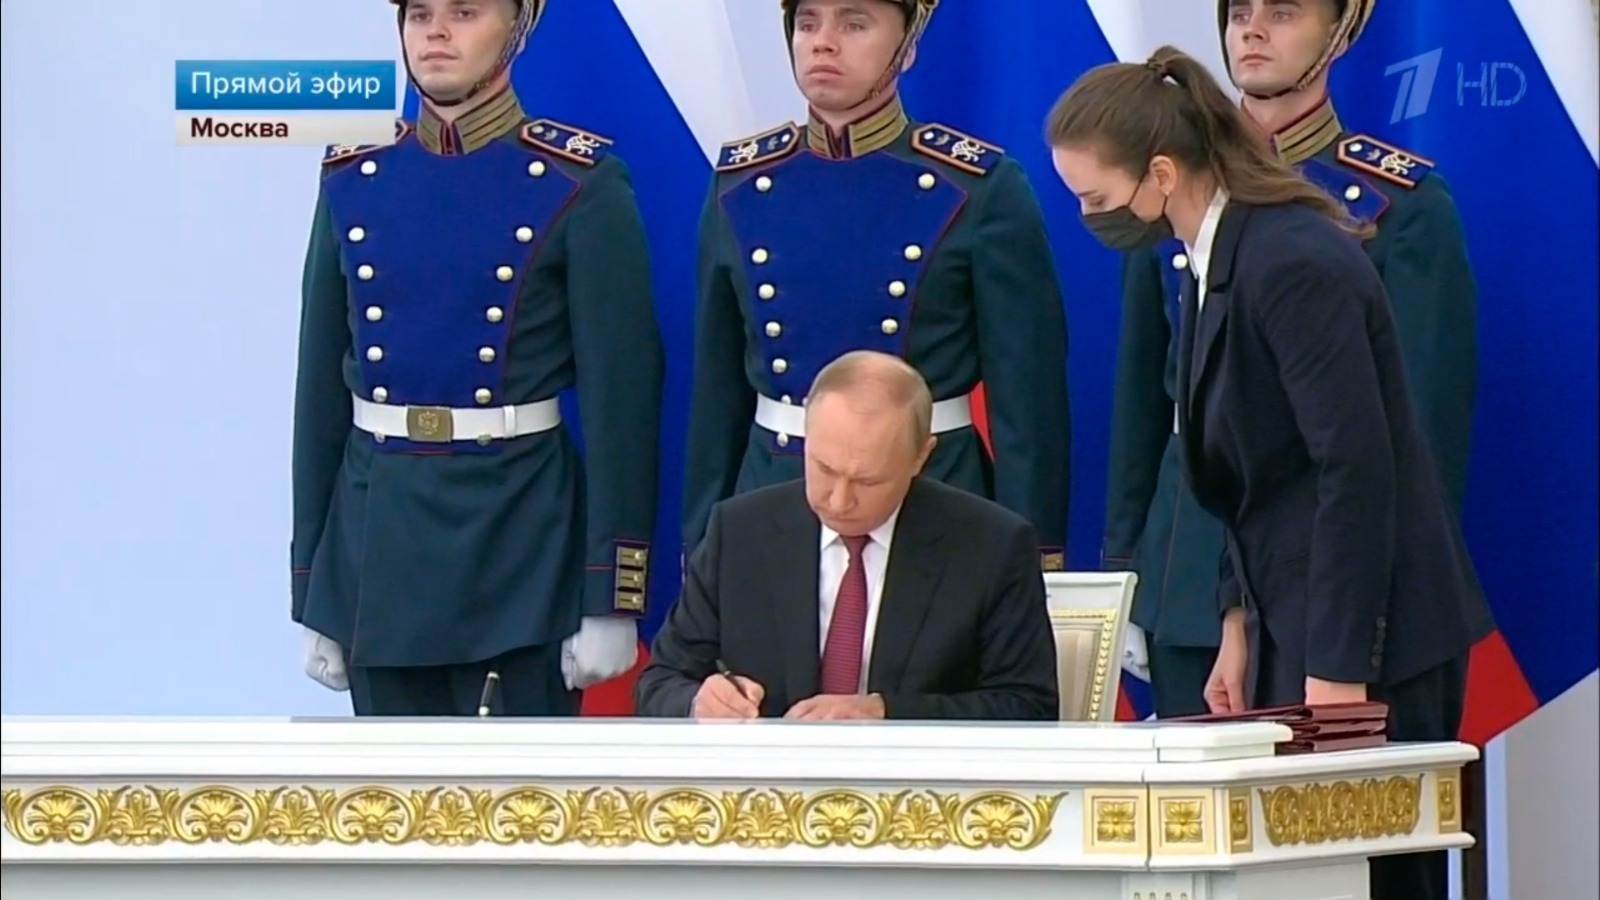 Владимир Путин подписал договор о вступлении в состав России новых территорий